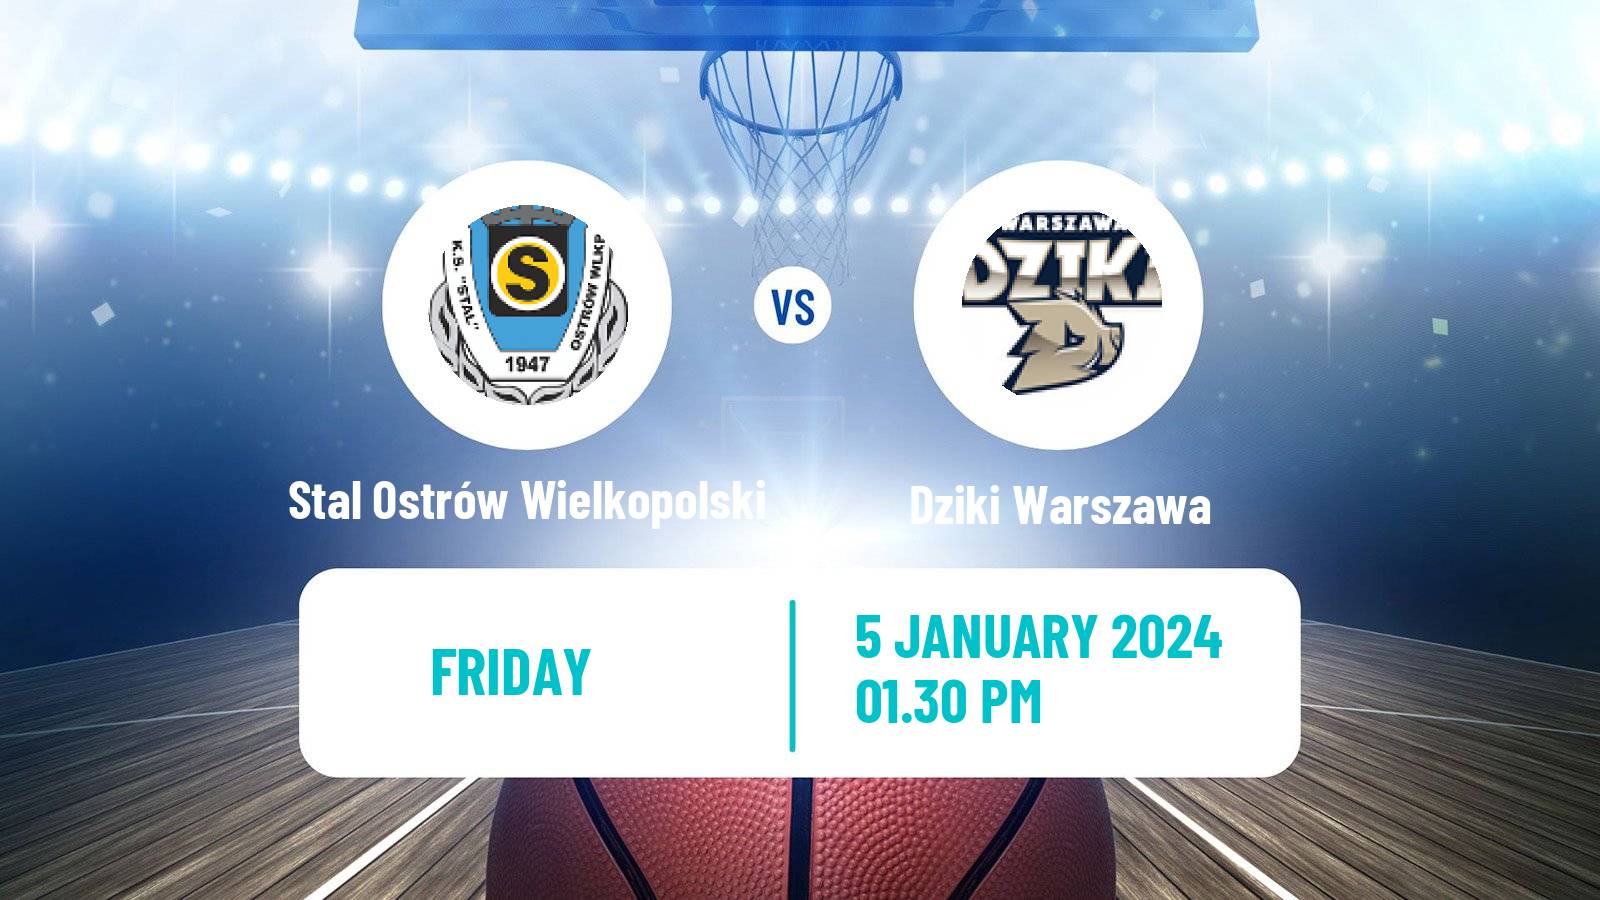 Basketball Polish Basket Liga Stal Ostrów Wielkopolski - Dziki Warszawa